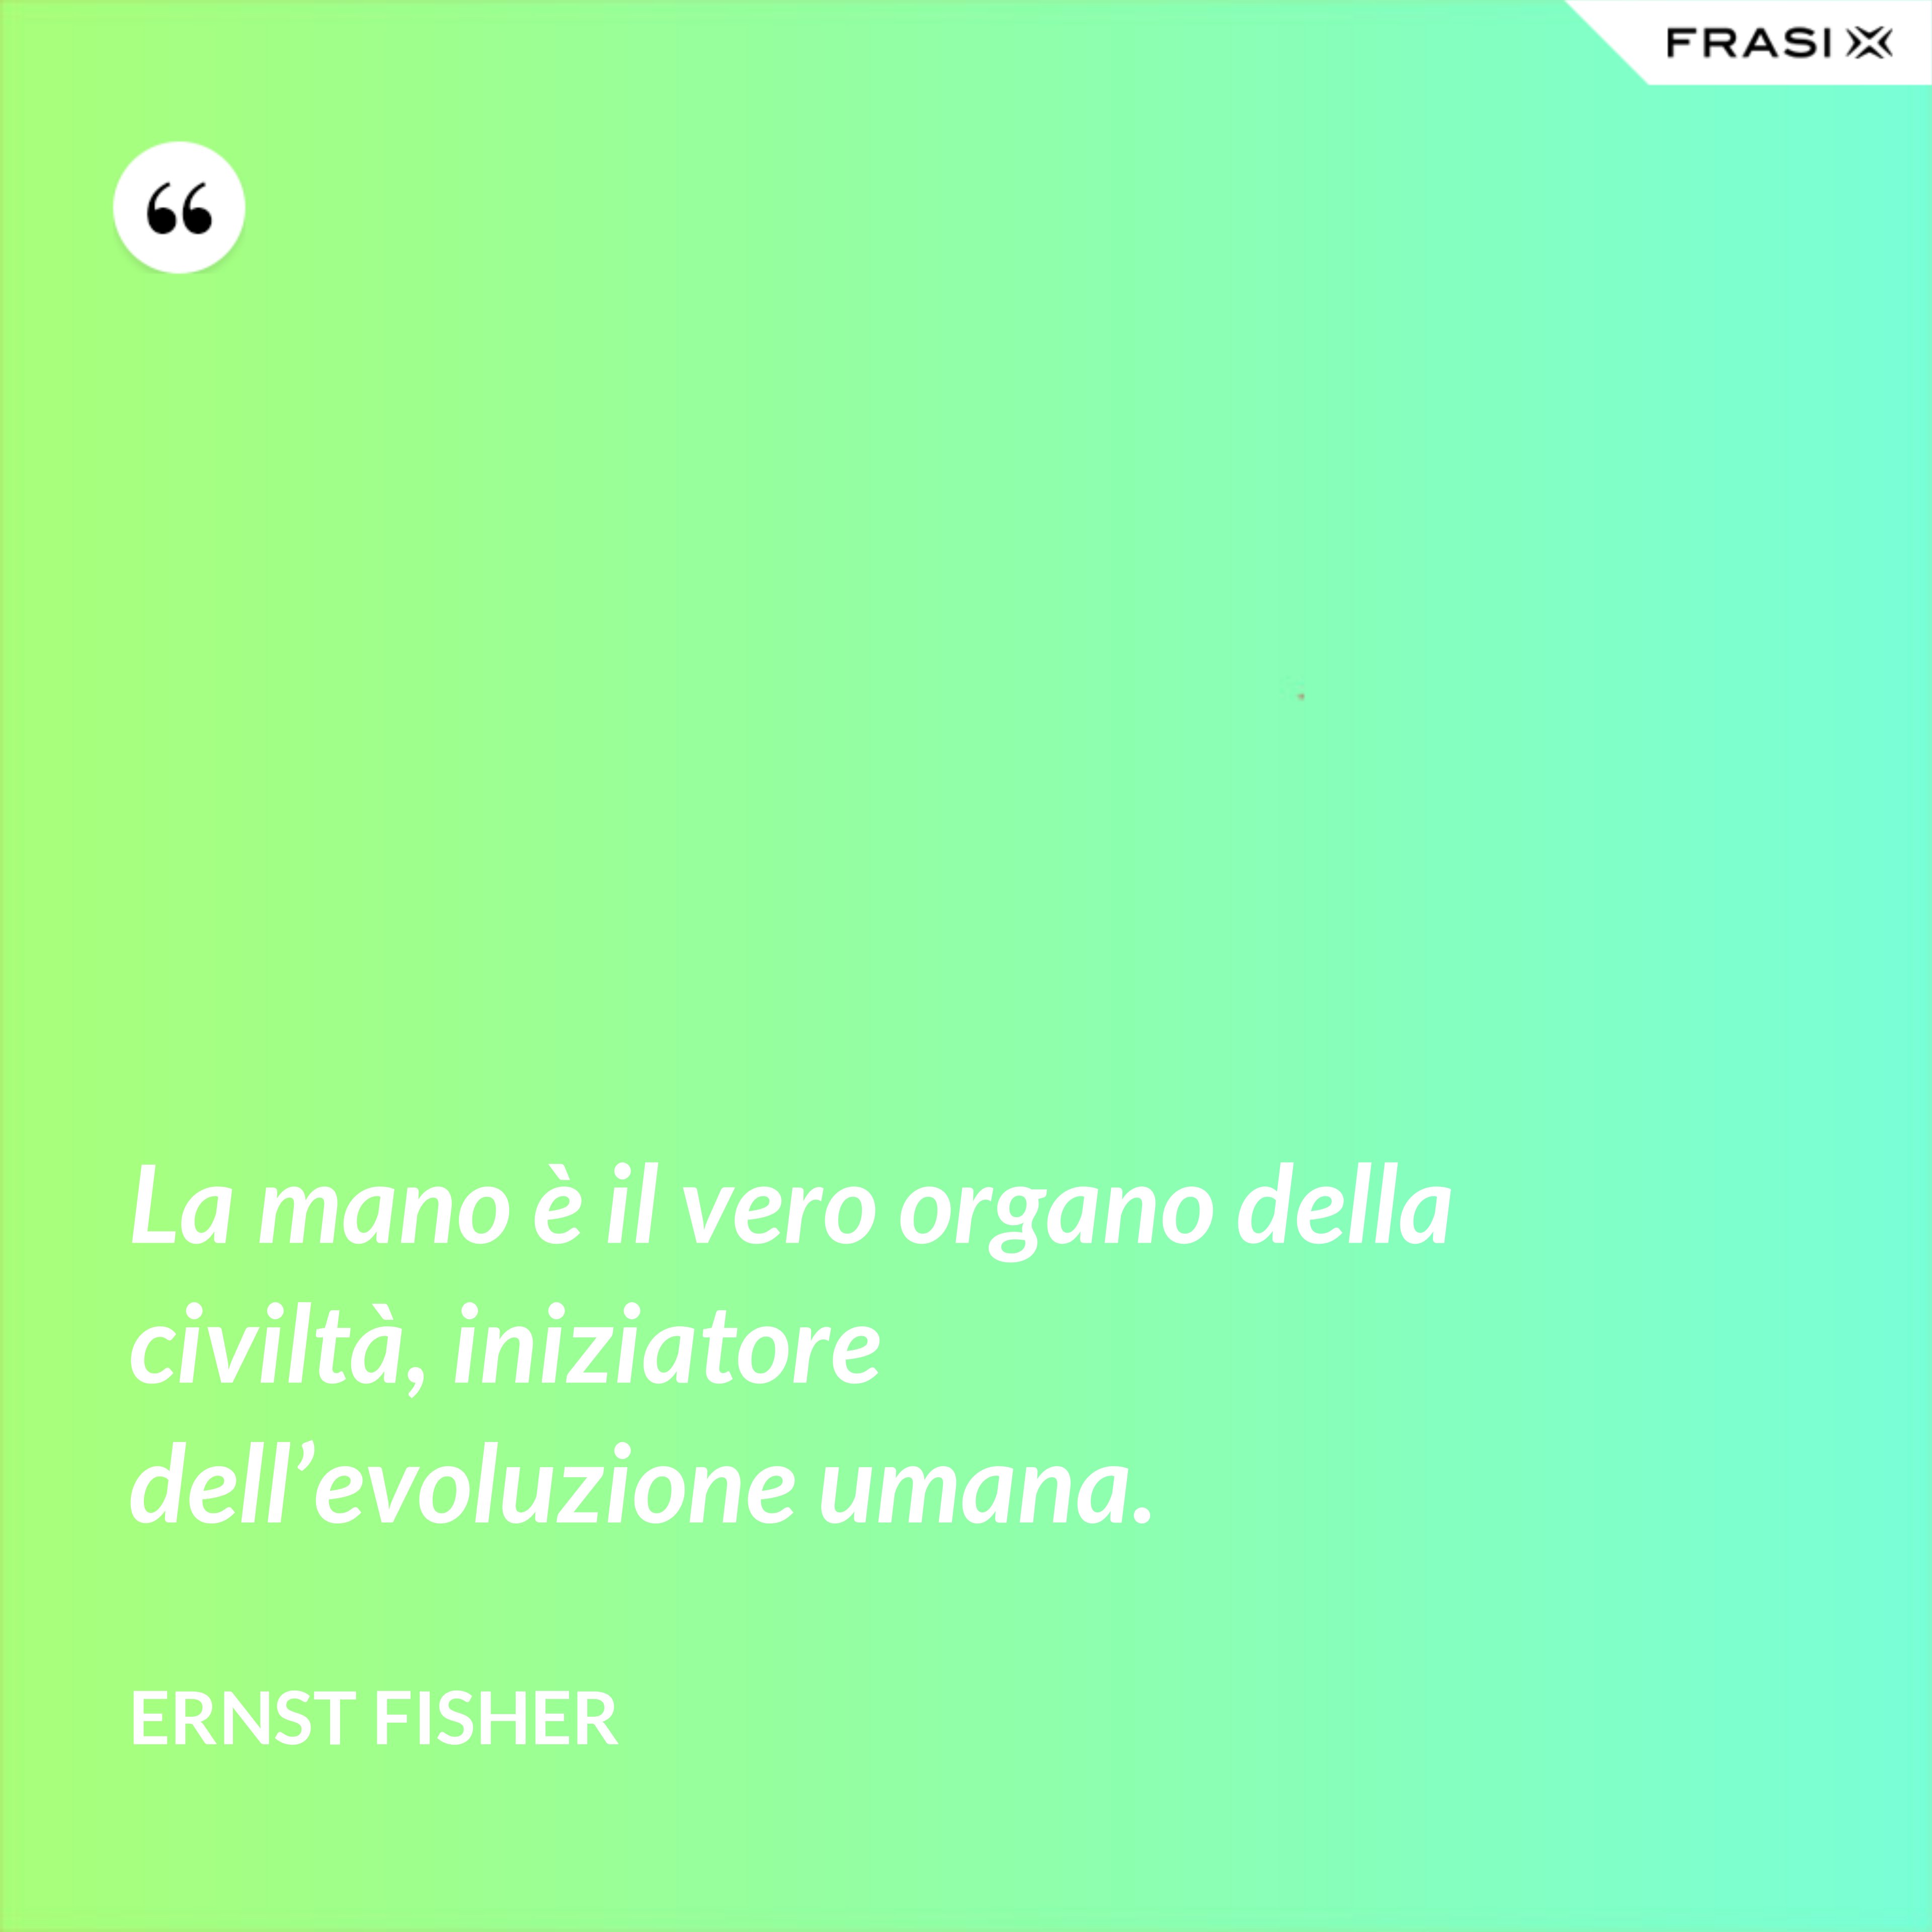 La mano è il vero organo della civiltà, iniziatore dell’evoluzione umana. - Ernst Fisher